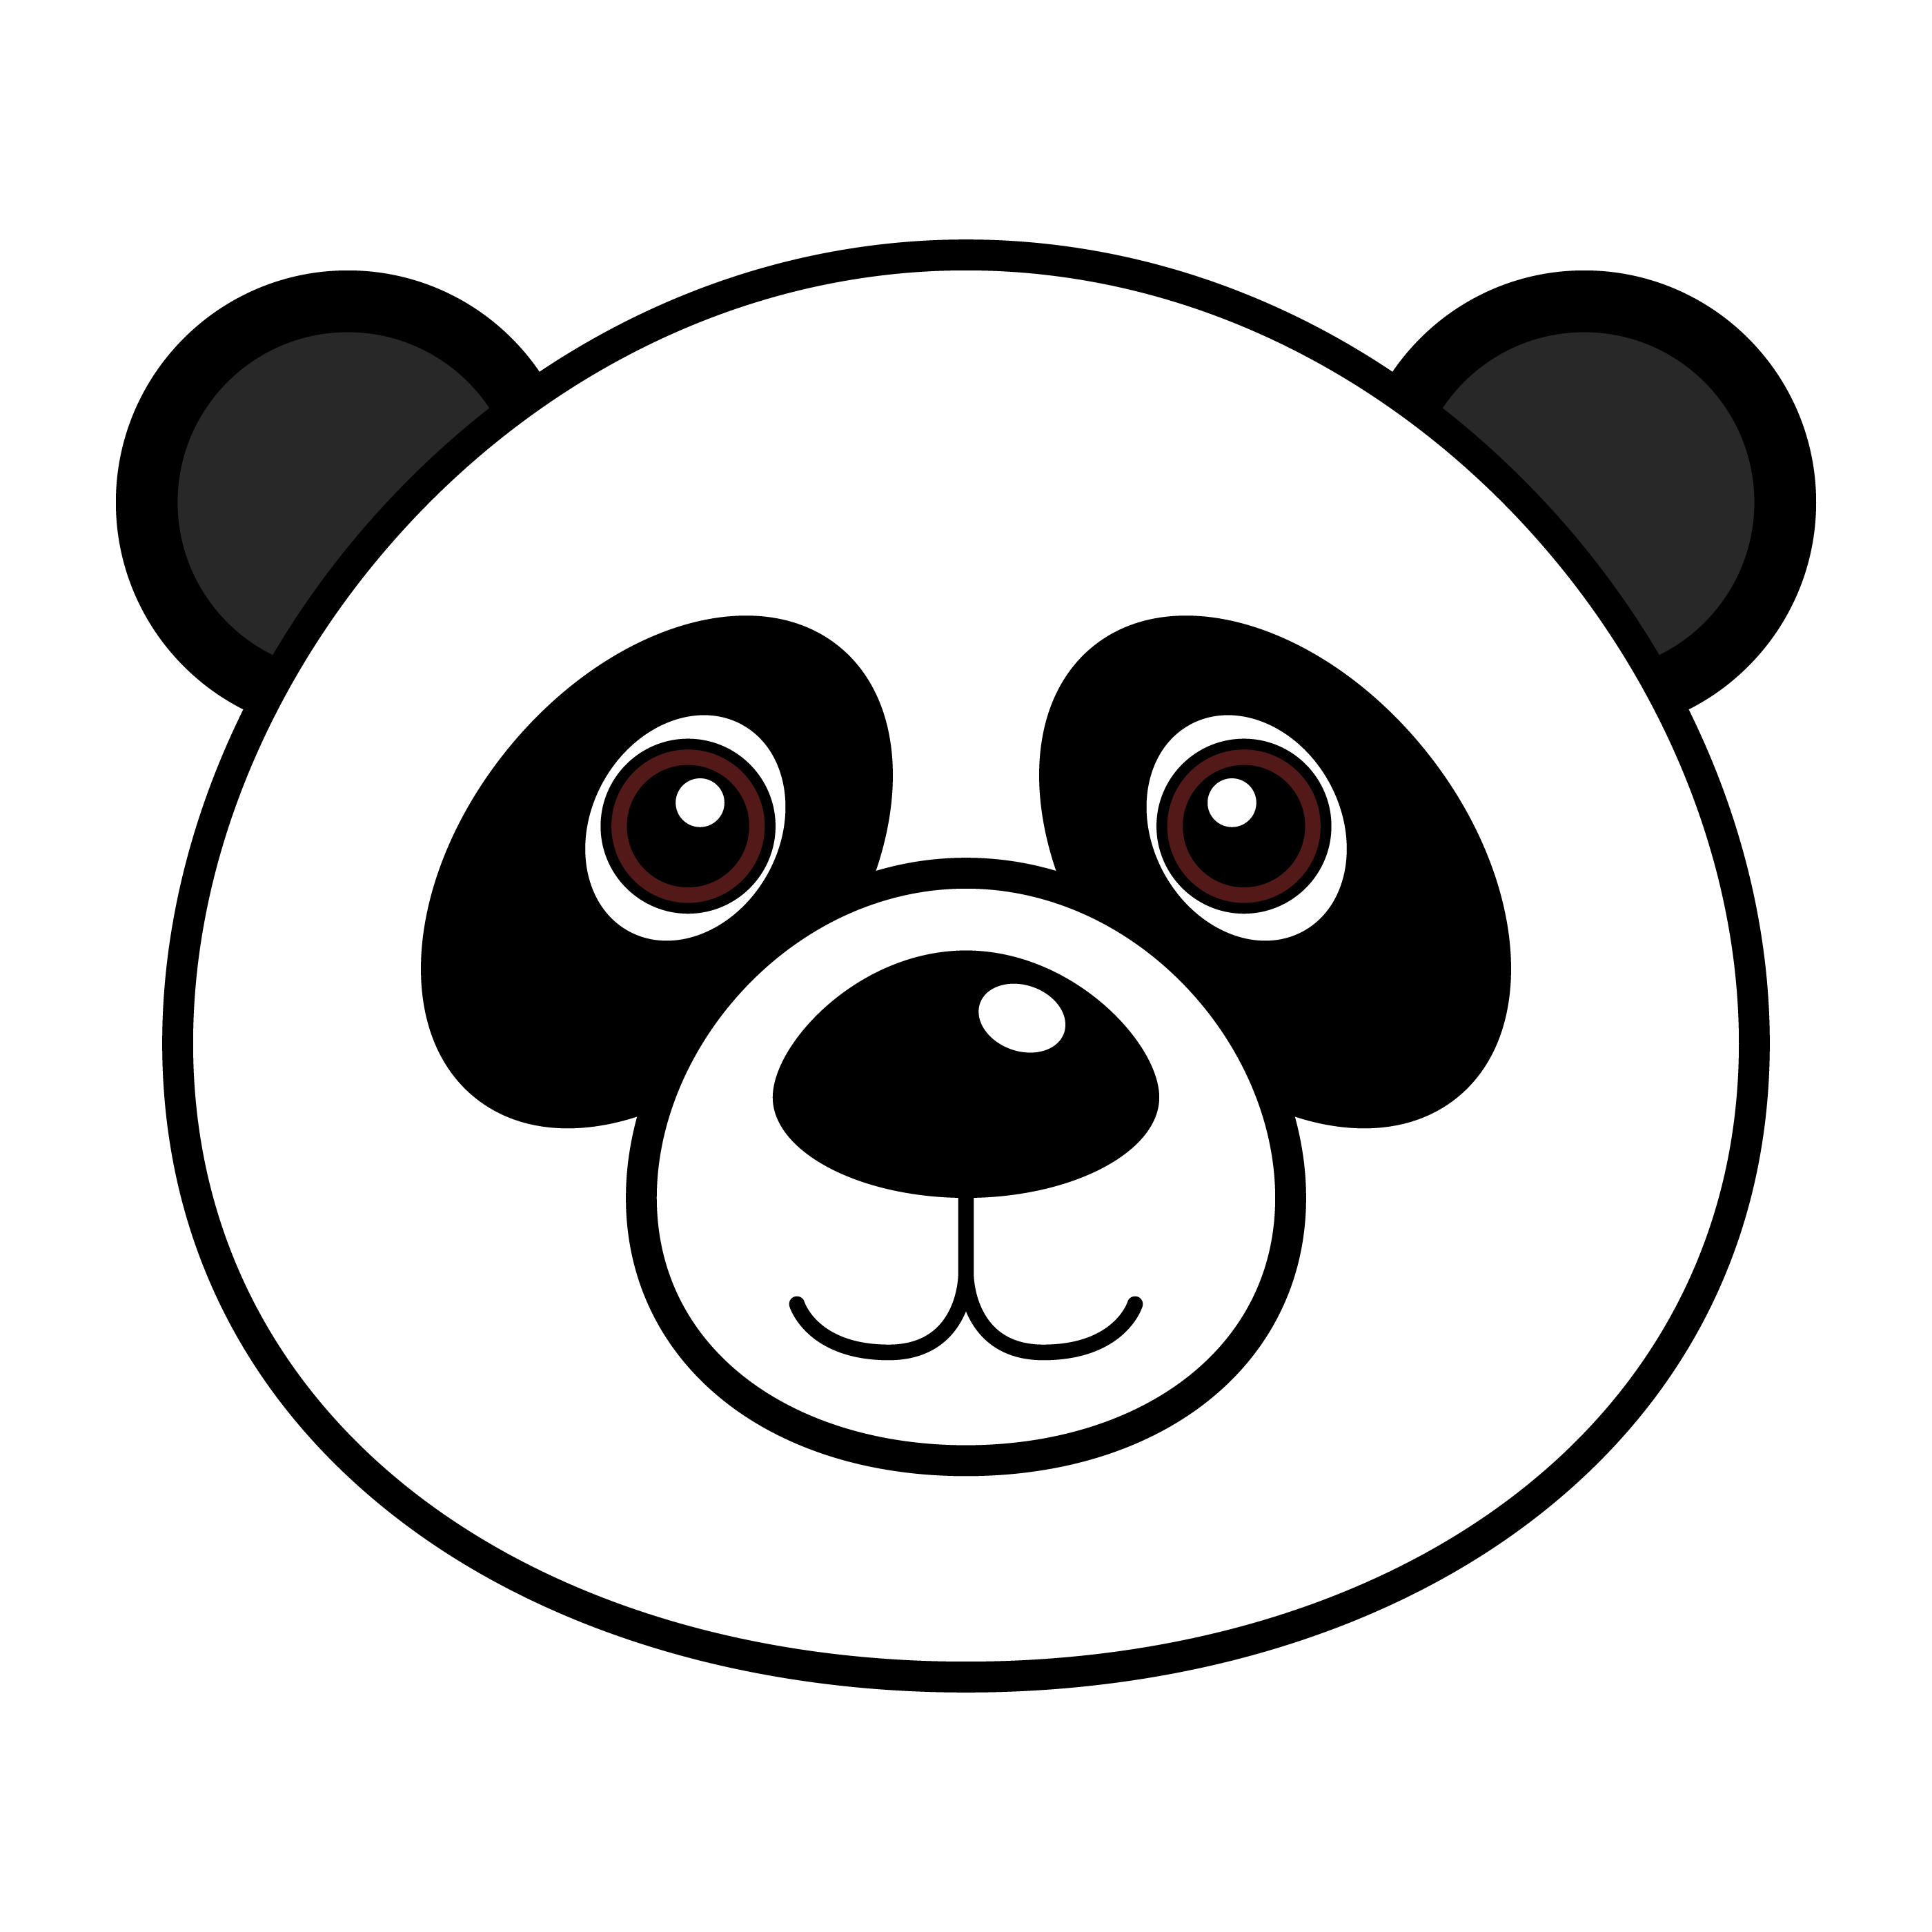 Free Gambar Kartun Panda Download Free Clip Art Free Clip Art On